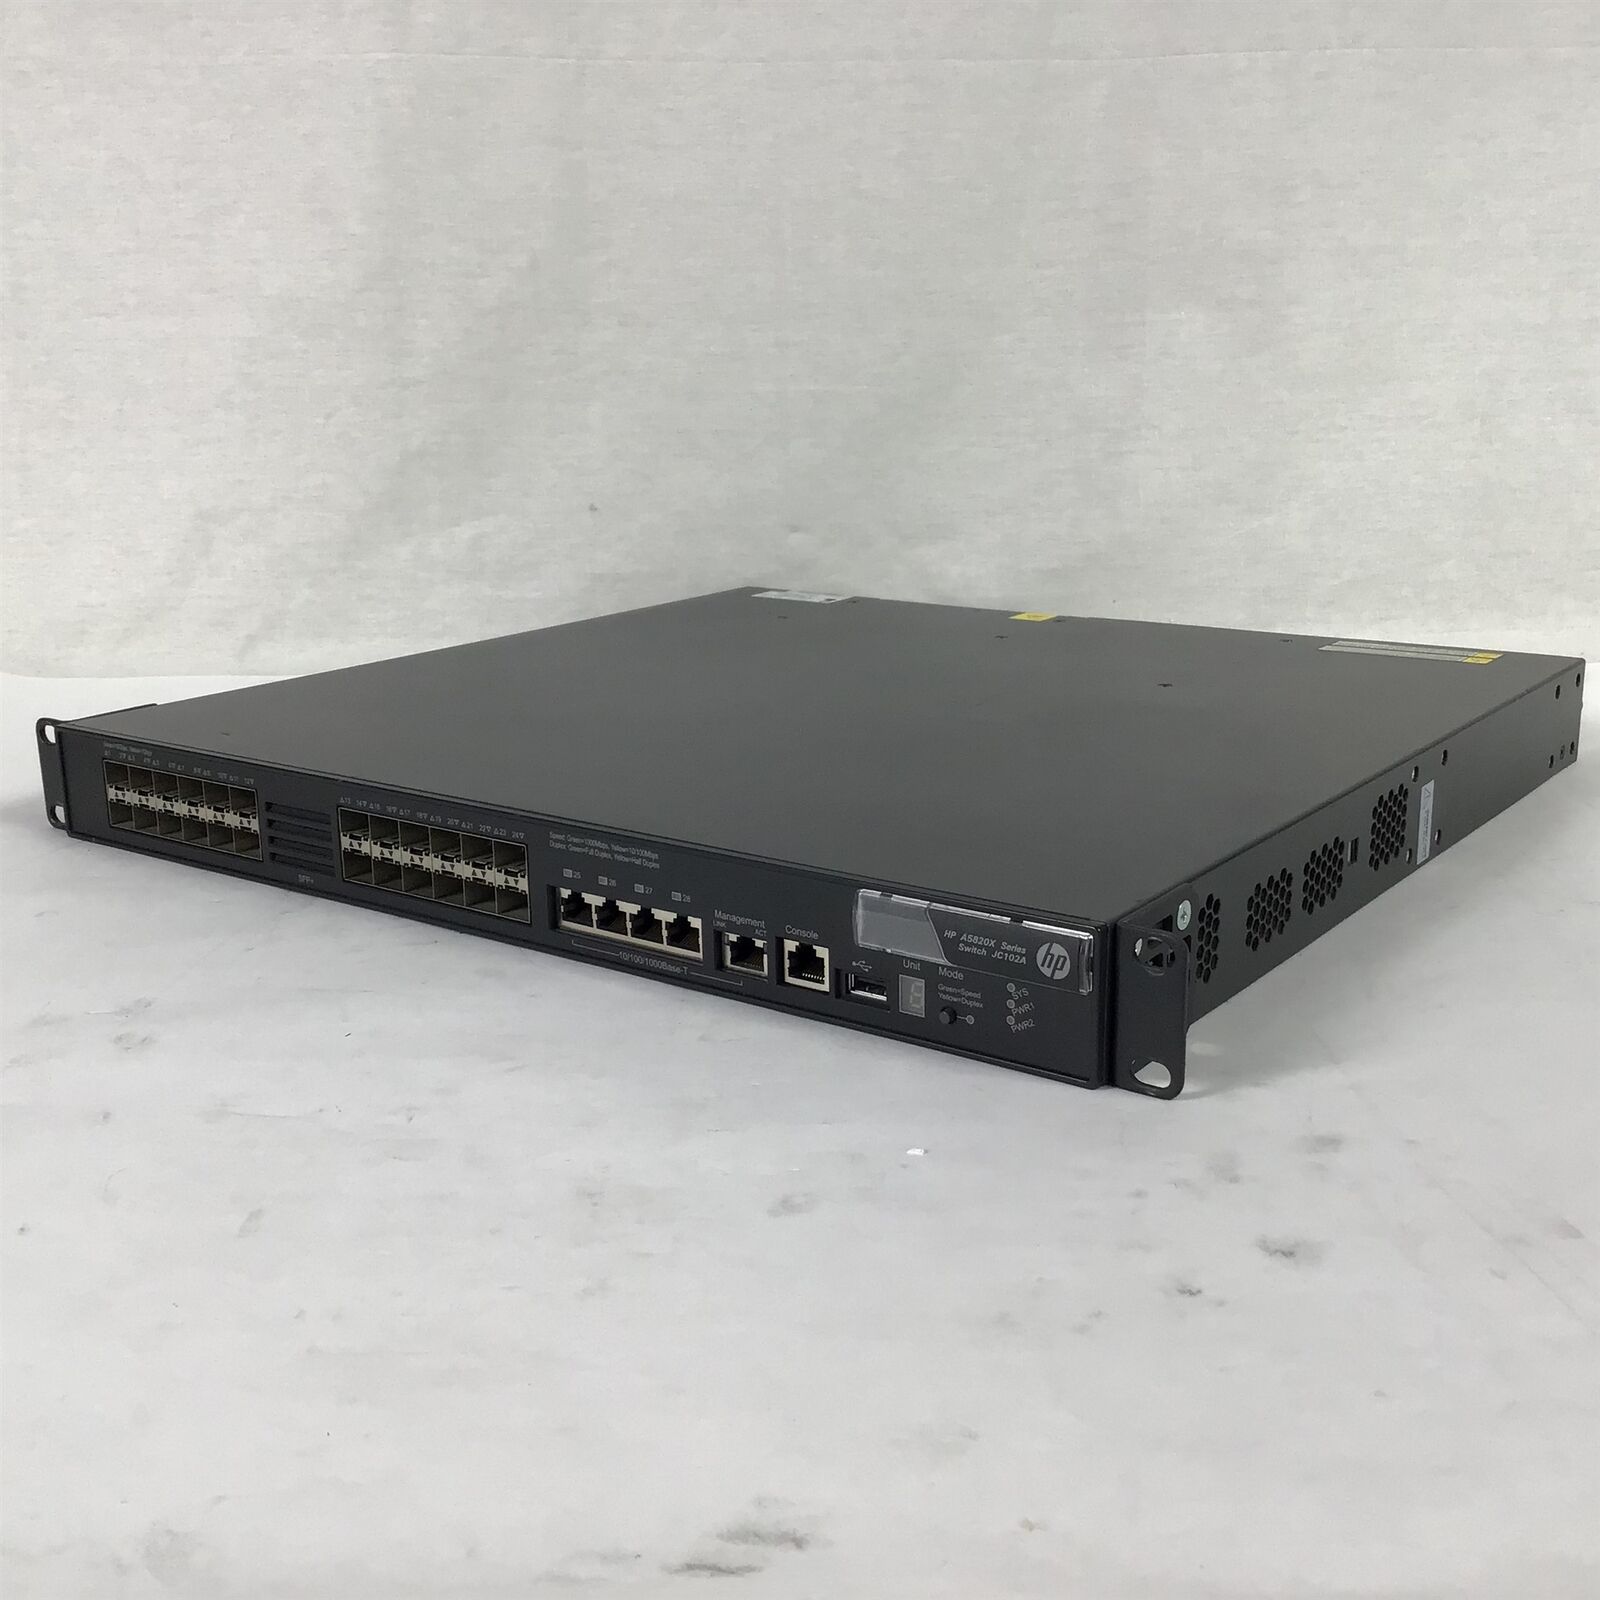 HP A5820X Series JC102A 24-Port Network Switch A5820X-24XG-SFP+ w/ 2x PSU